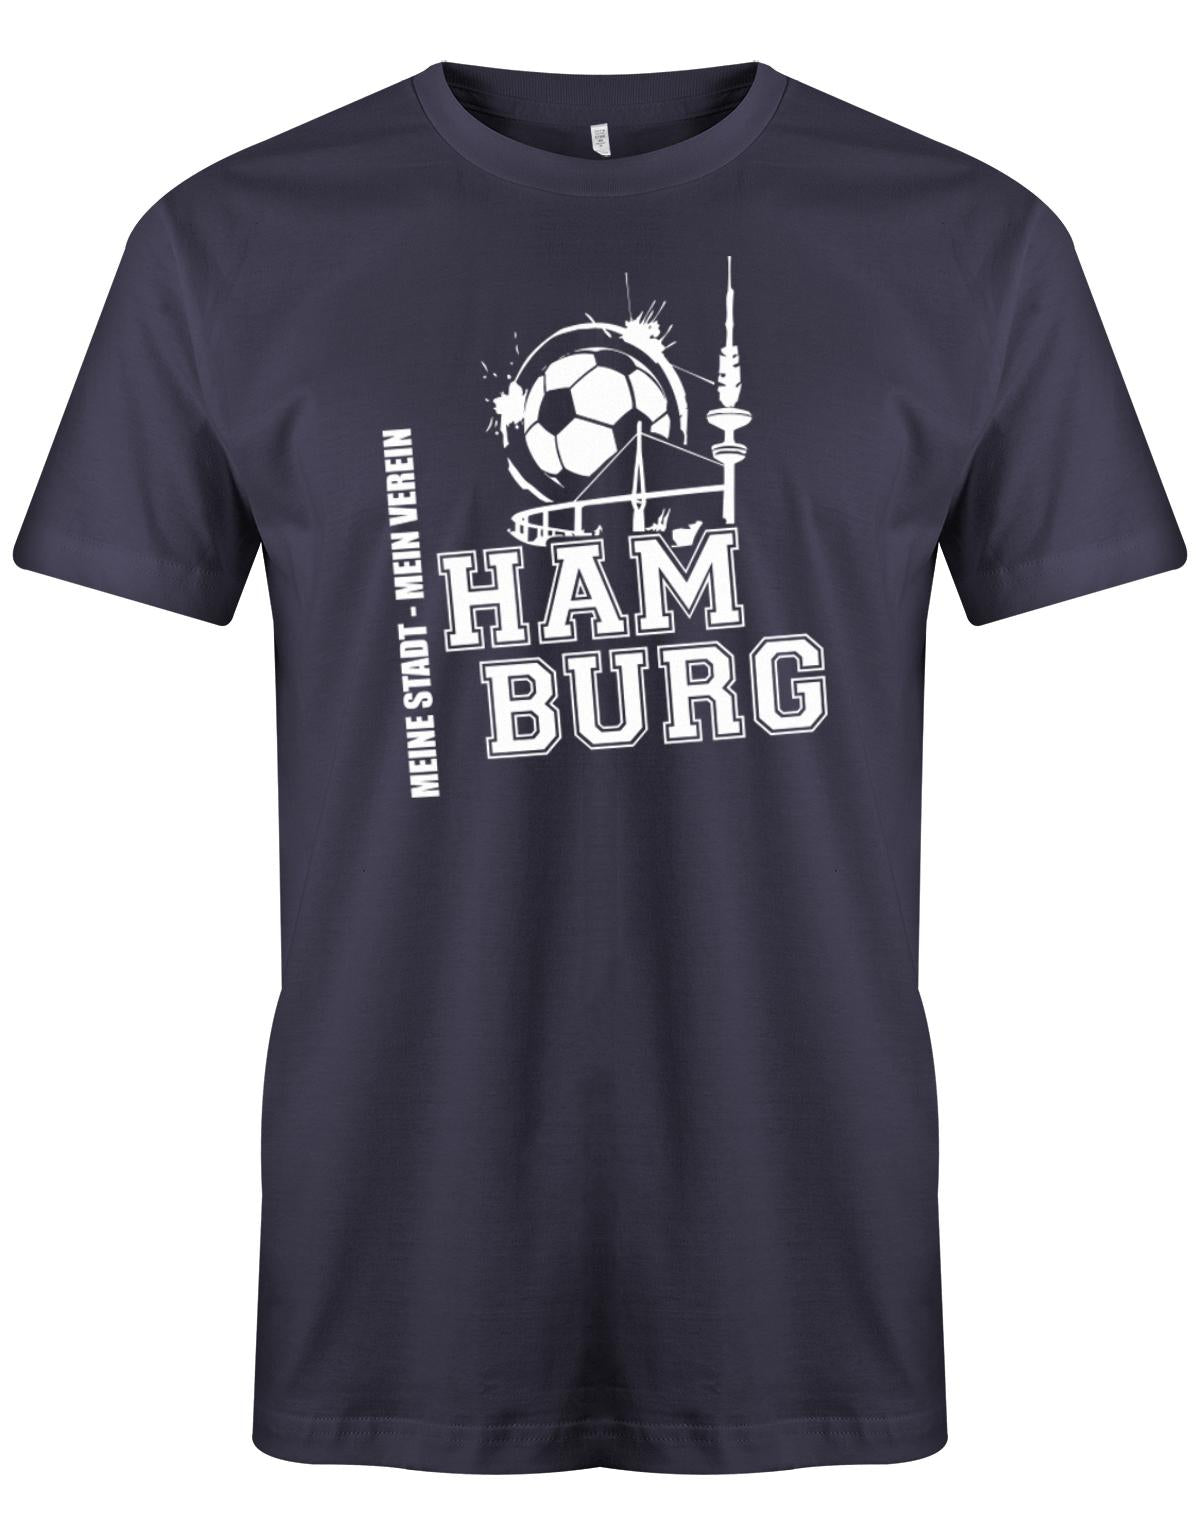 Hamburg-Meine-Stadt-Mein-verein-Herren-Shirt-Navy